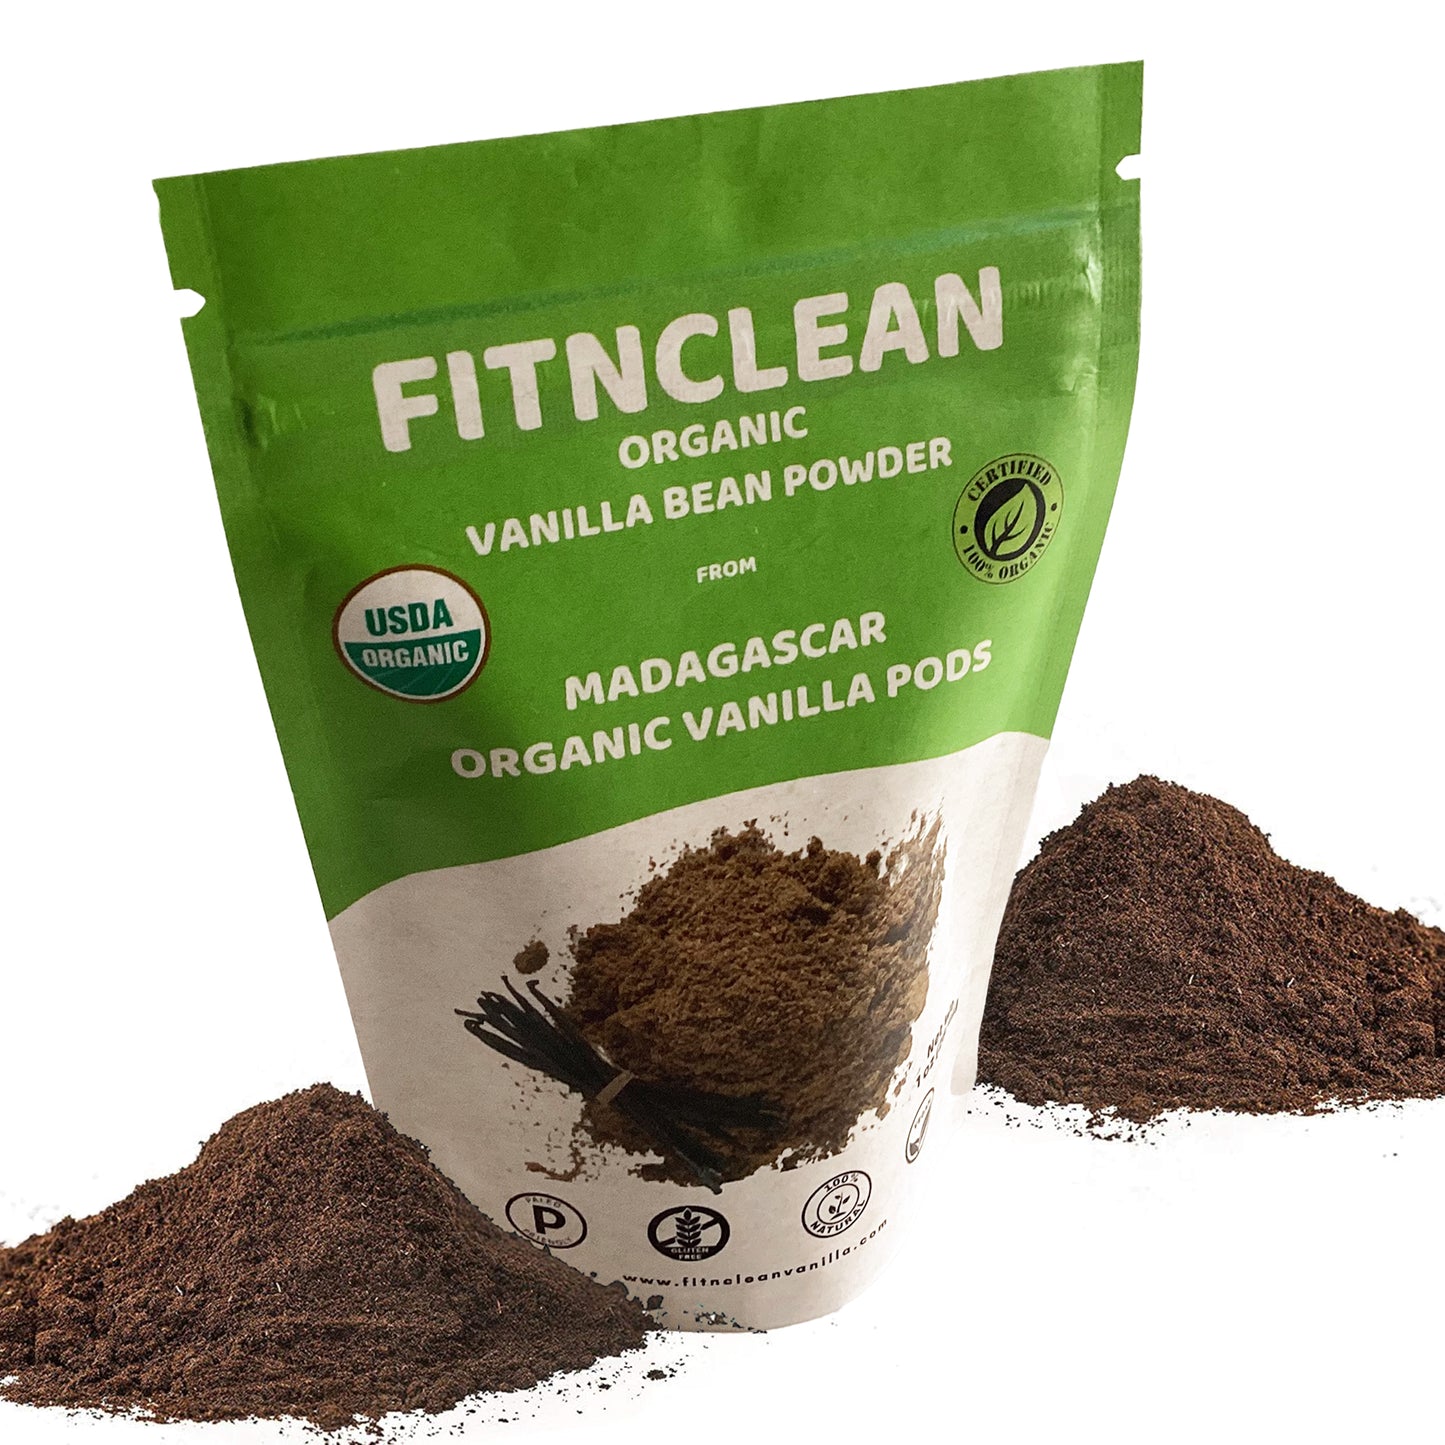 Organic Madagascar Vanilla Powder